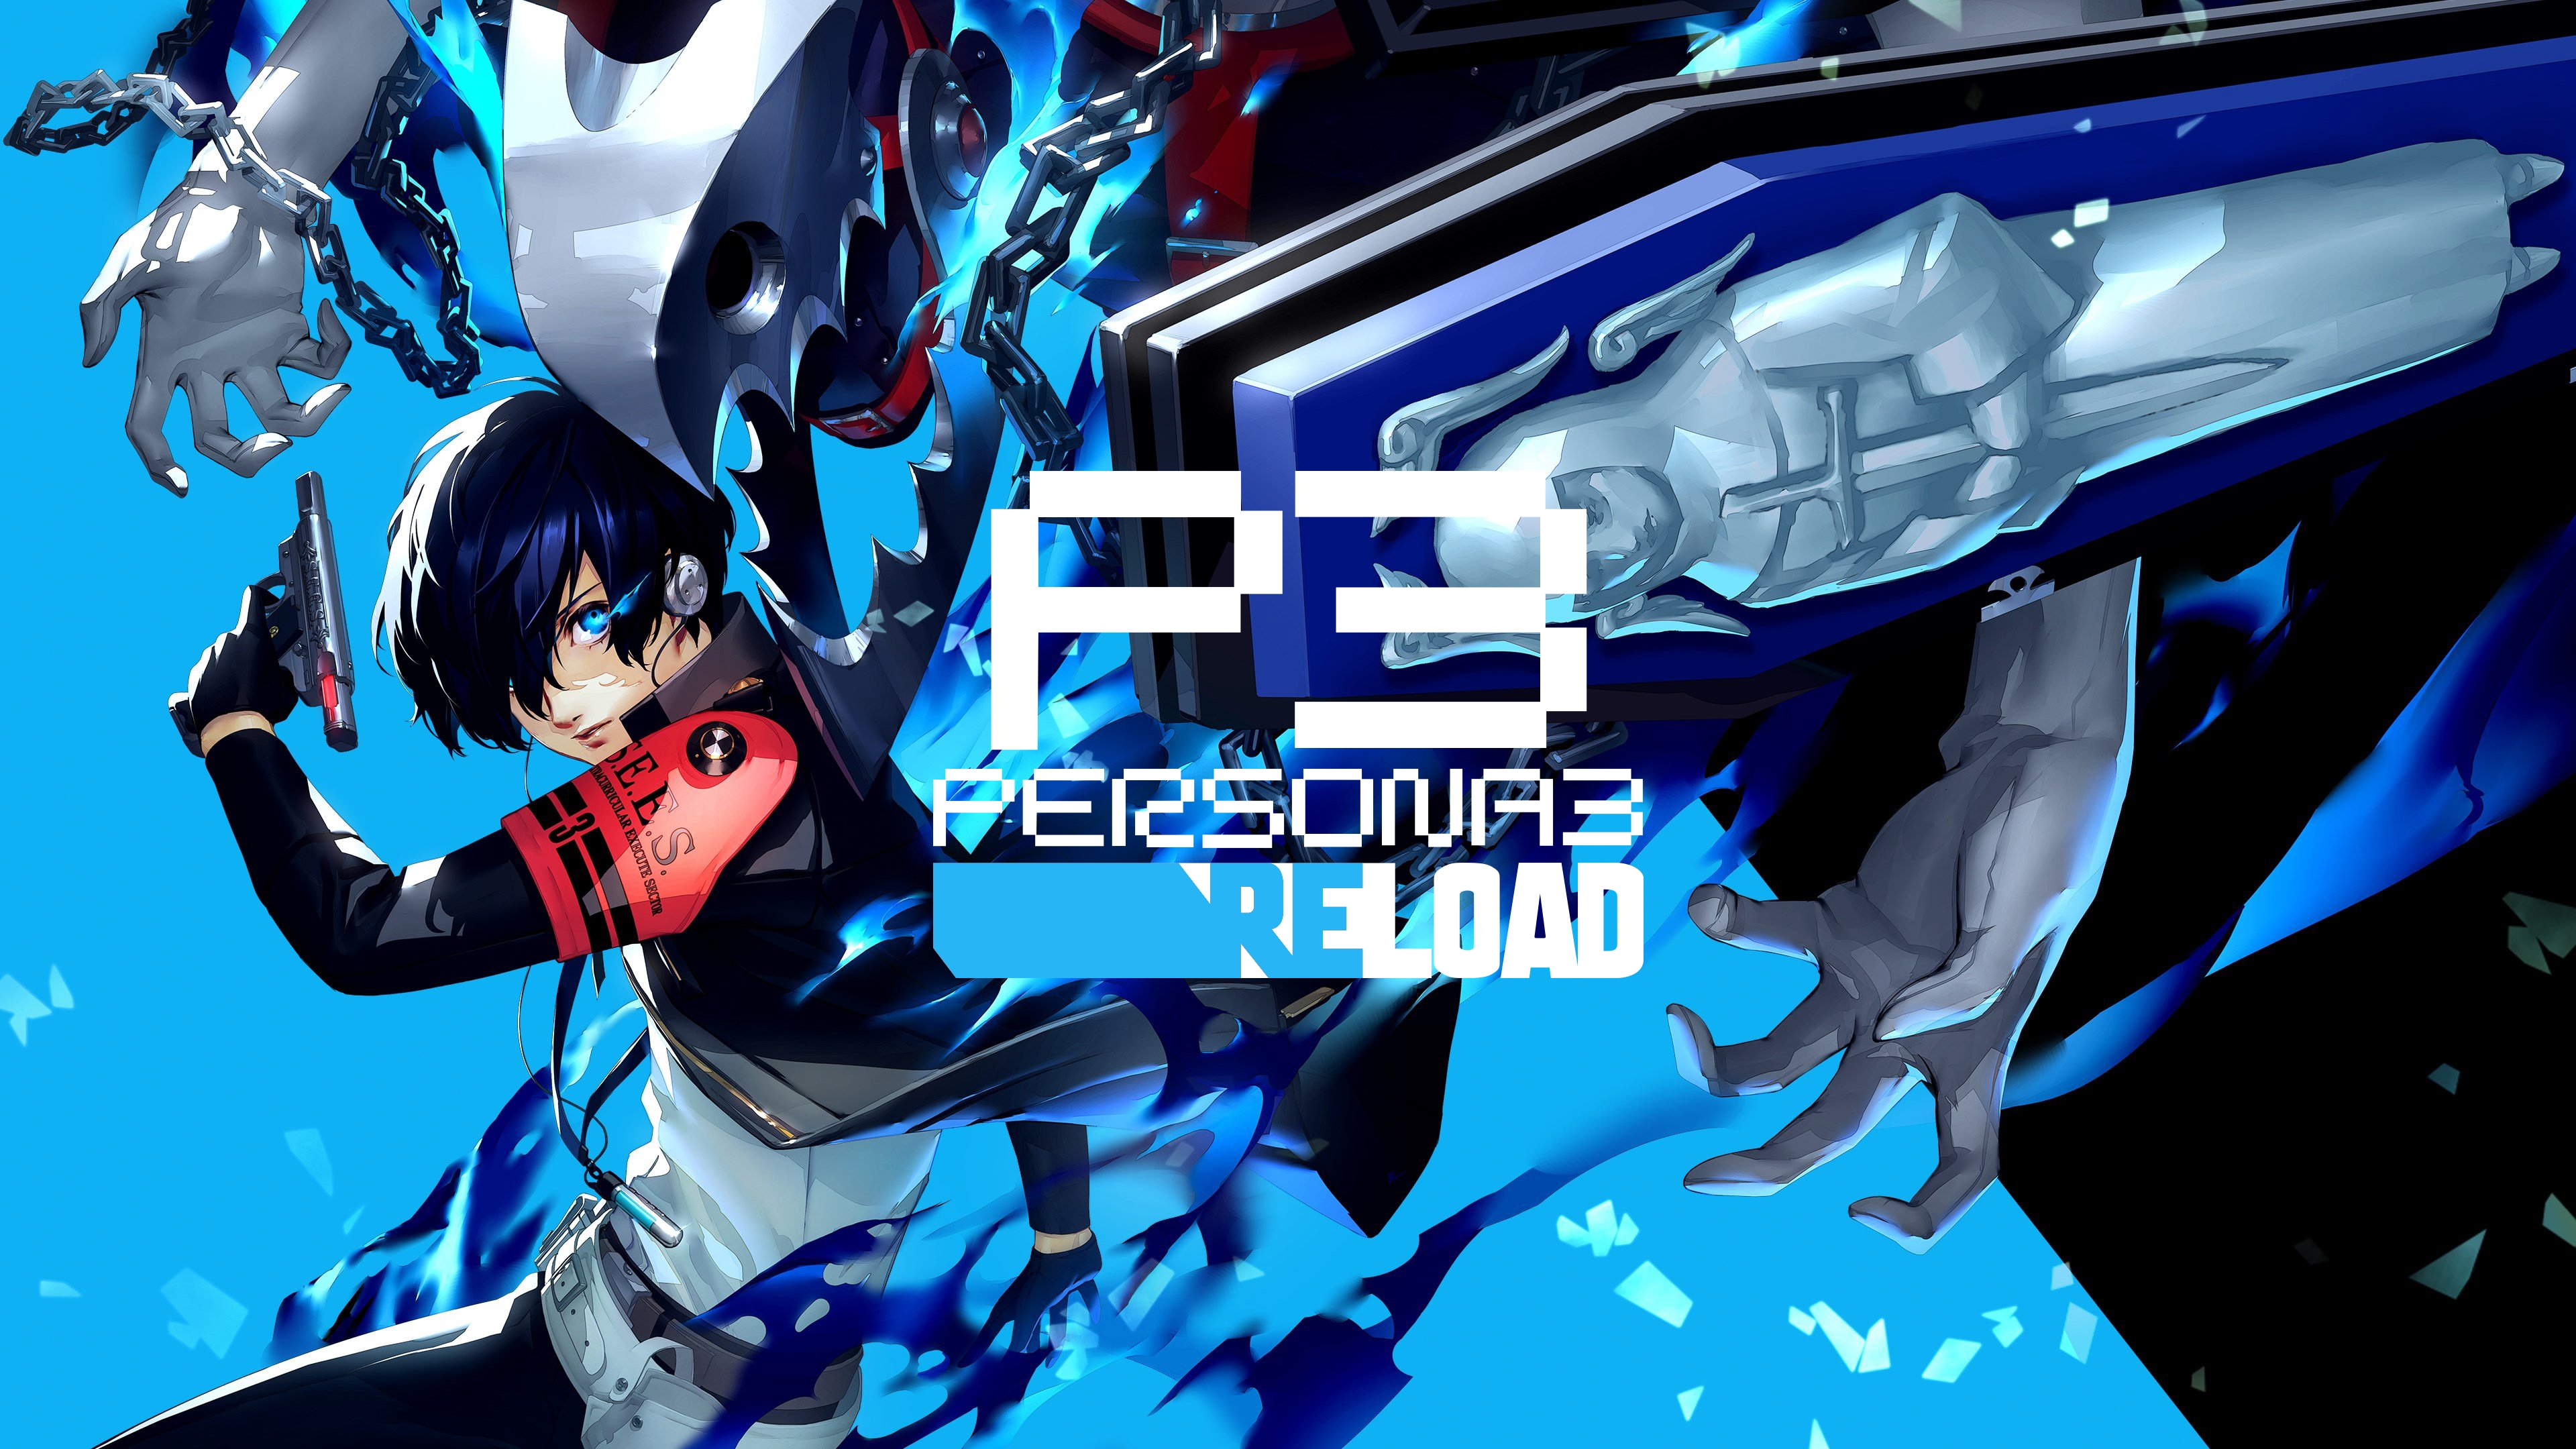 Le nombre d'exemplaires de Persona 3 Reload vendus au cours de la première semaine a dépassé le million.